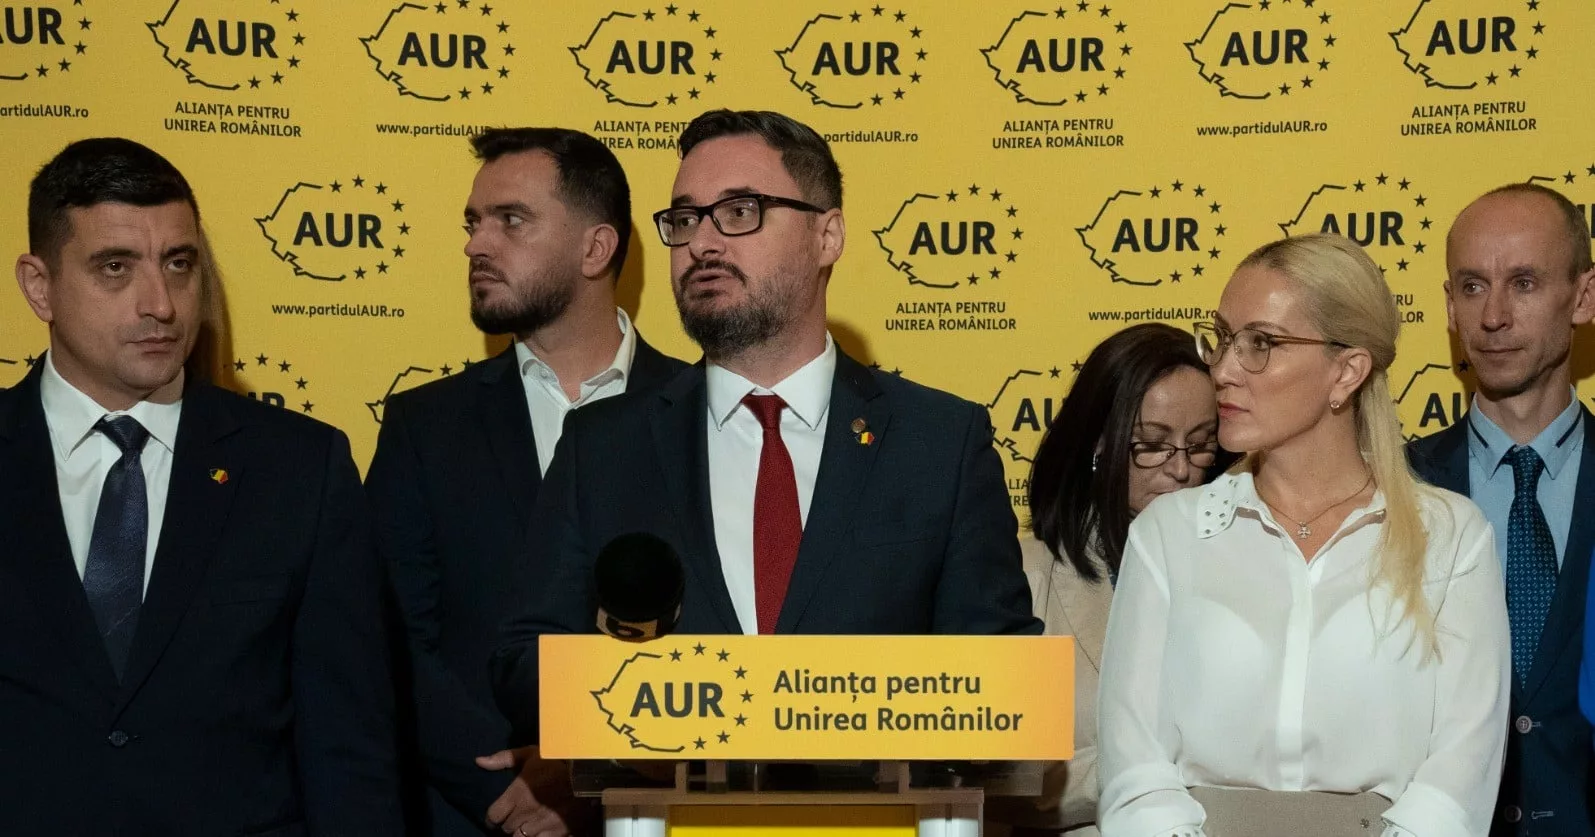 Partidul AUR susține că este atacat prin intermediul unui ziar din Elveția